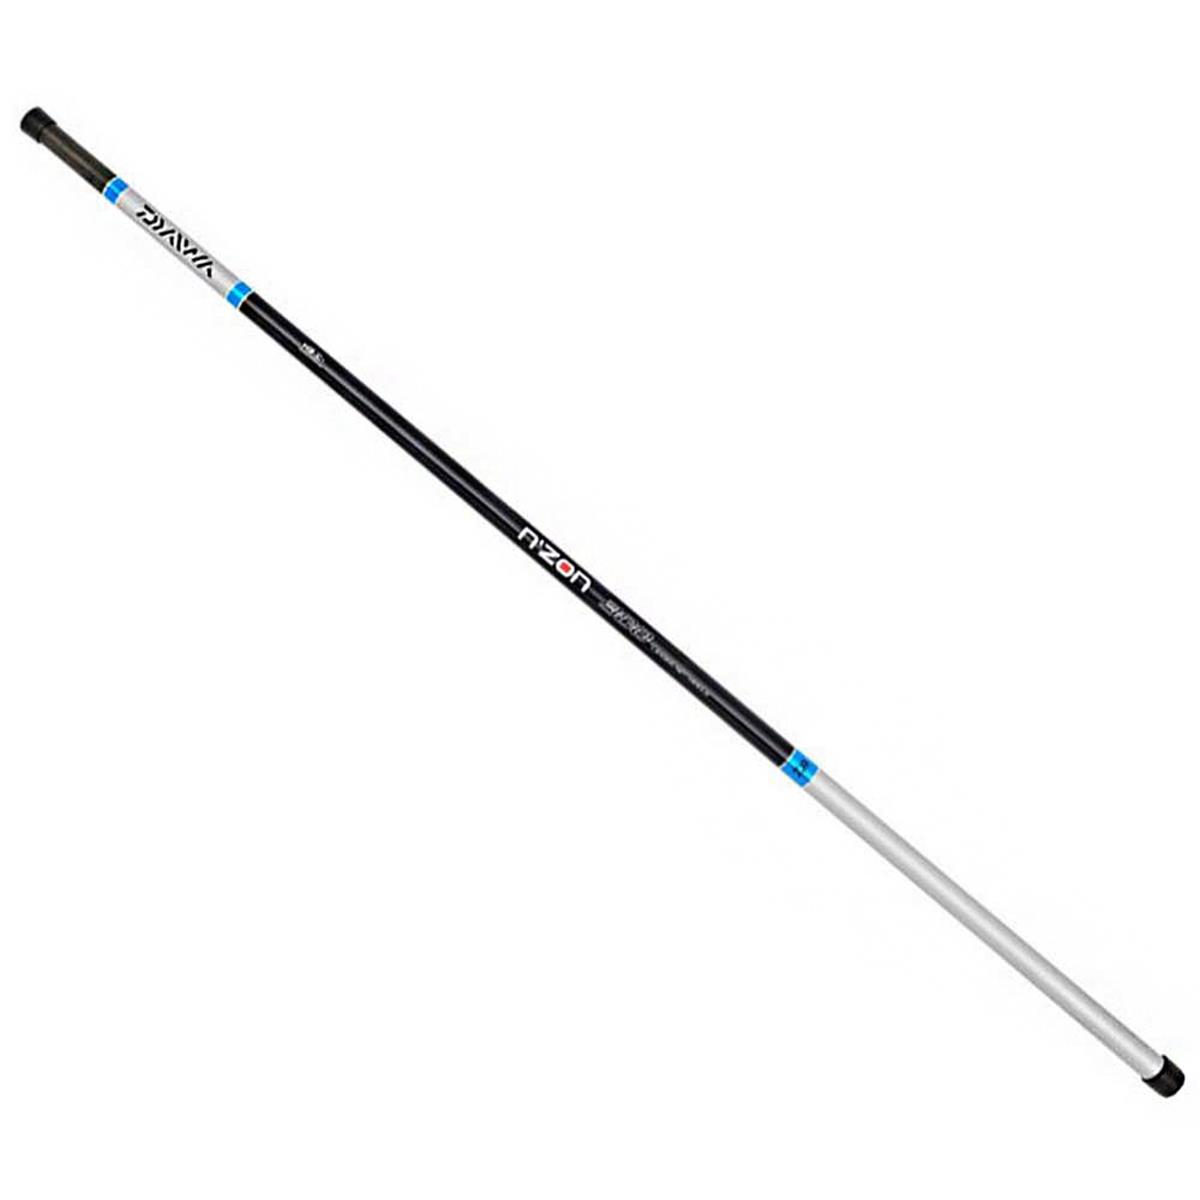 Ручка подсачека N'ZON LANDING NET HANDLE 3.0 m  N´ZON ручка paul masquin деревянная сверхпрочная 140 см